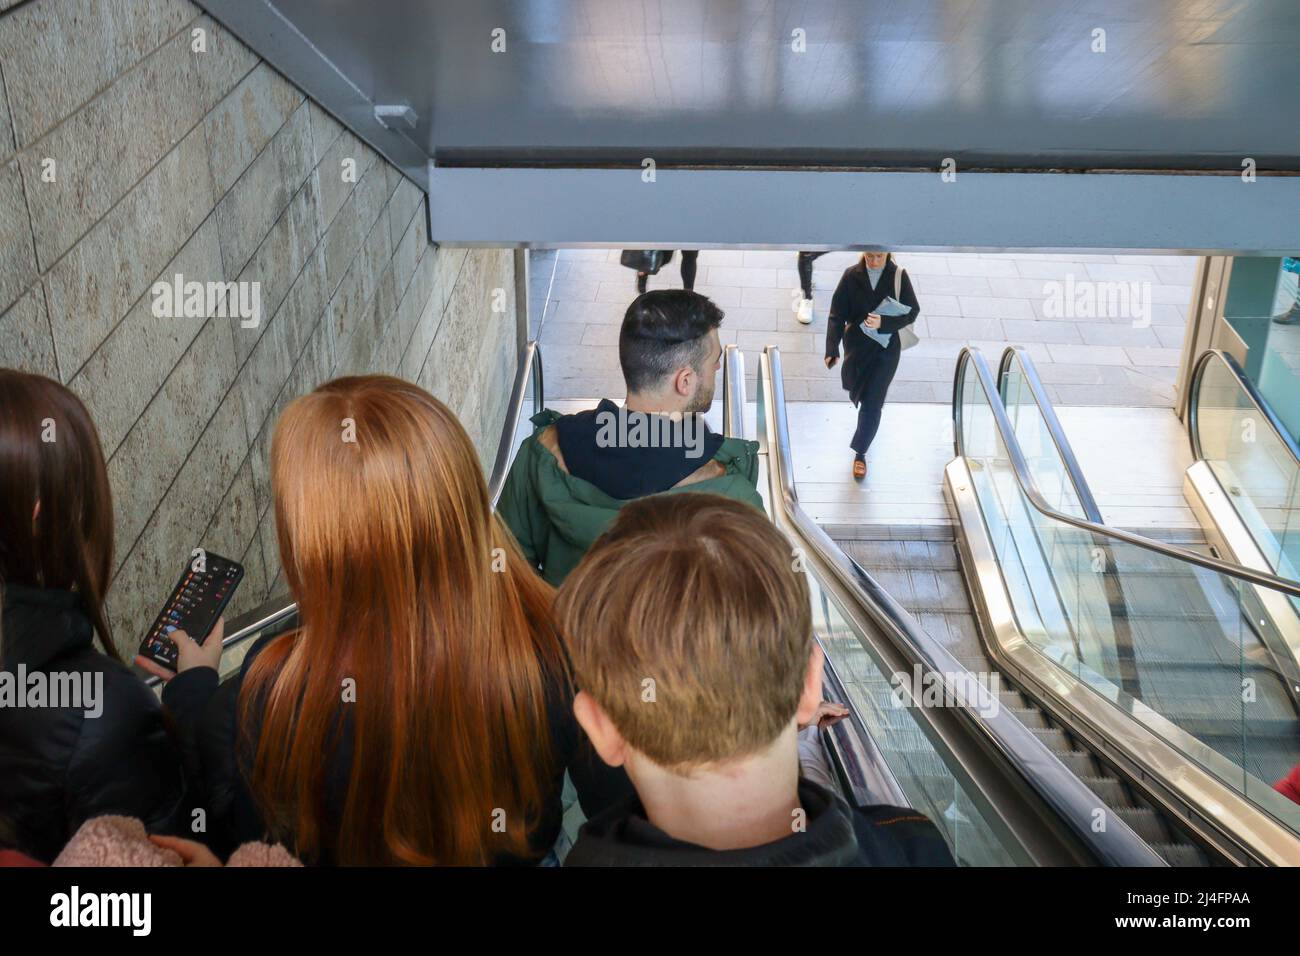 Les personnes qui descendent sur un escalier mécanique Banque D'Images